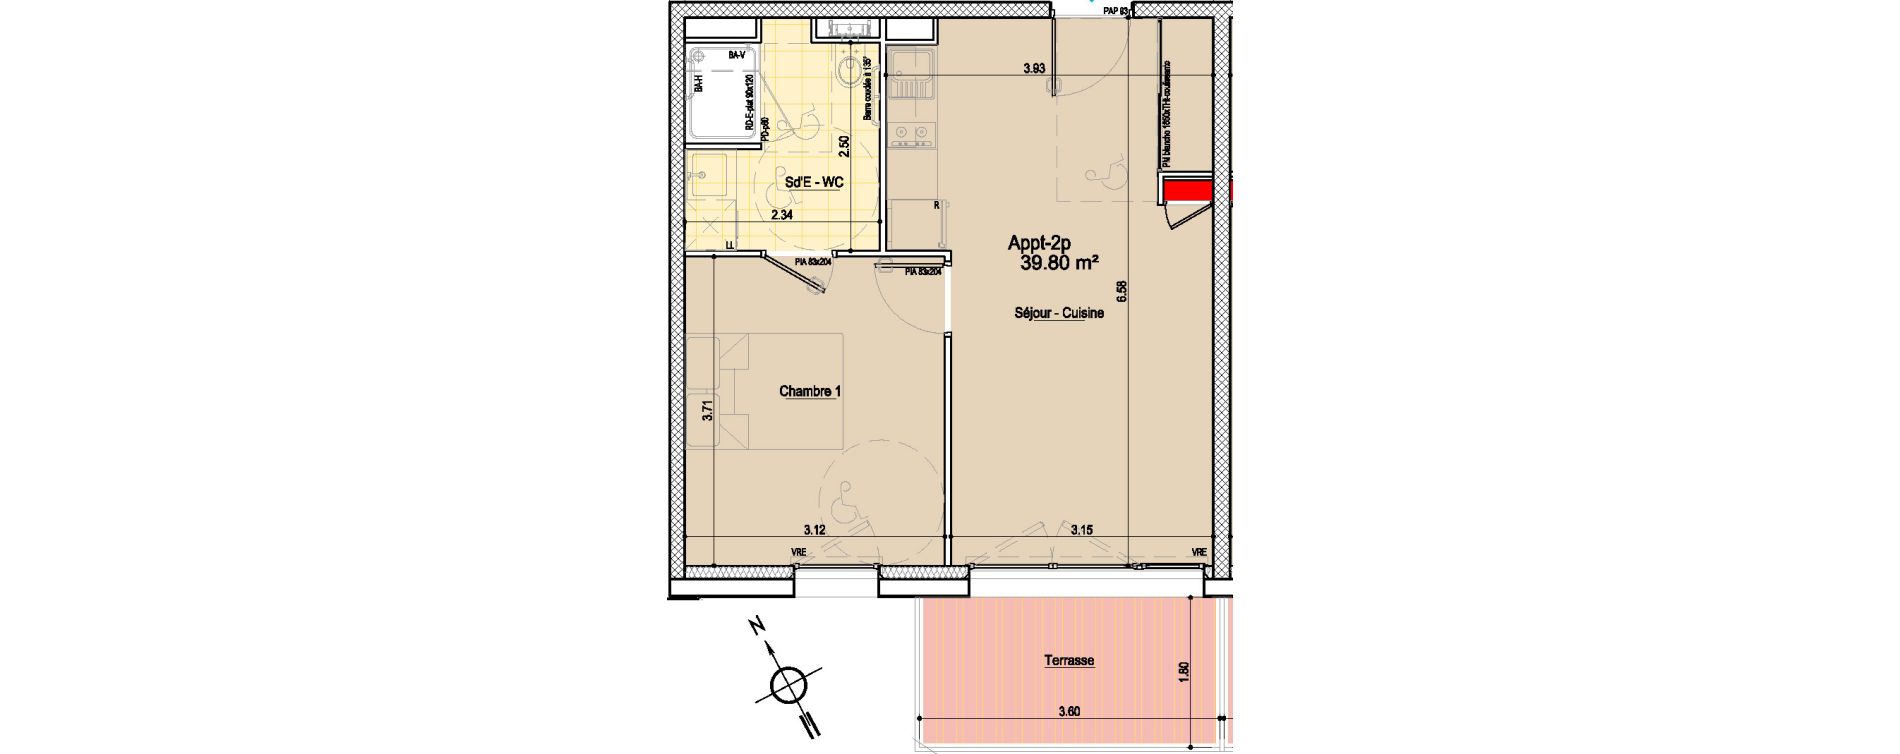 Appartement T2 de 39,80 m2 aux Sables-D'Olonne Le chateau d olonne